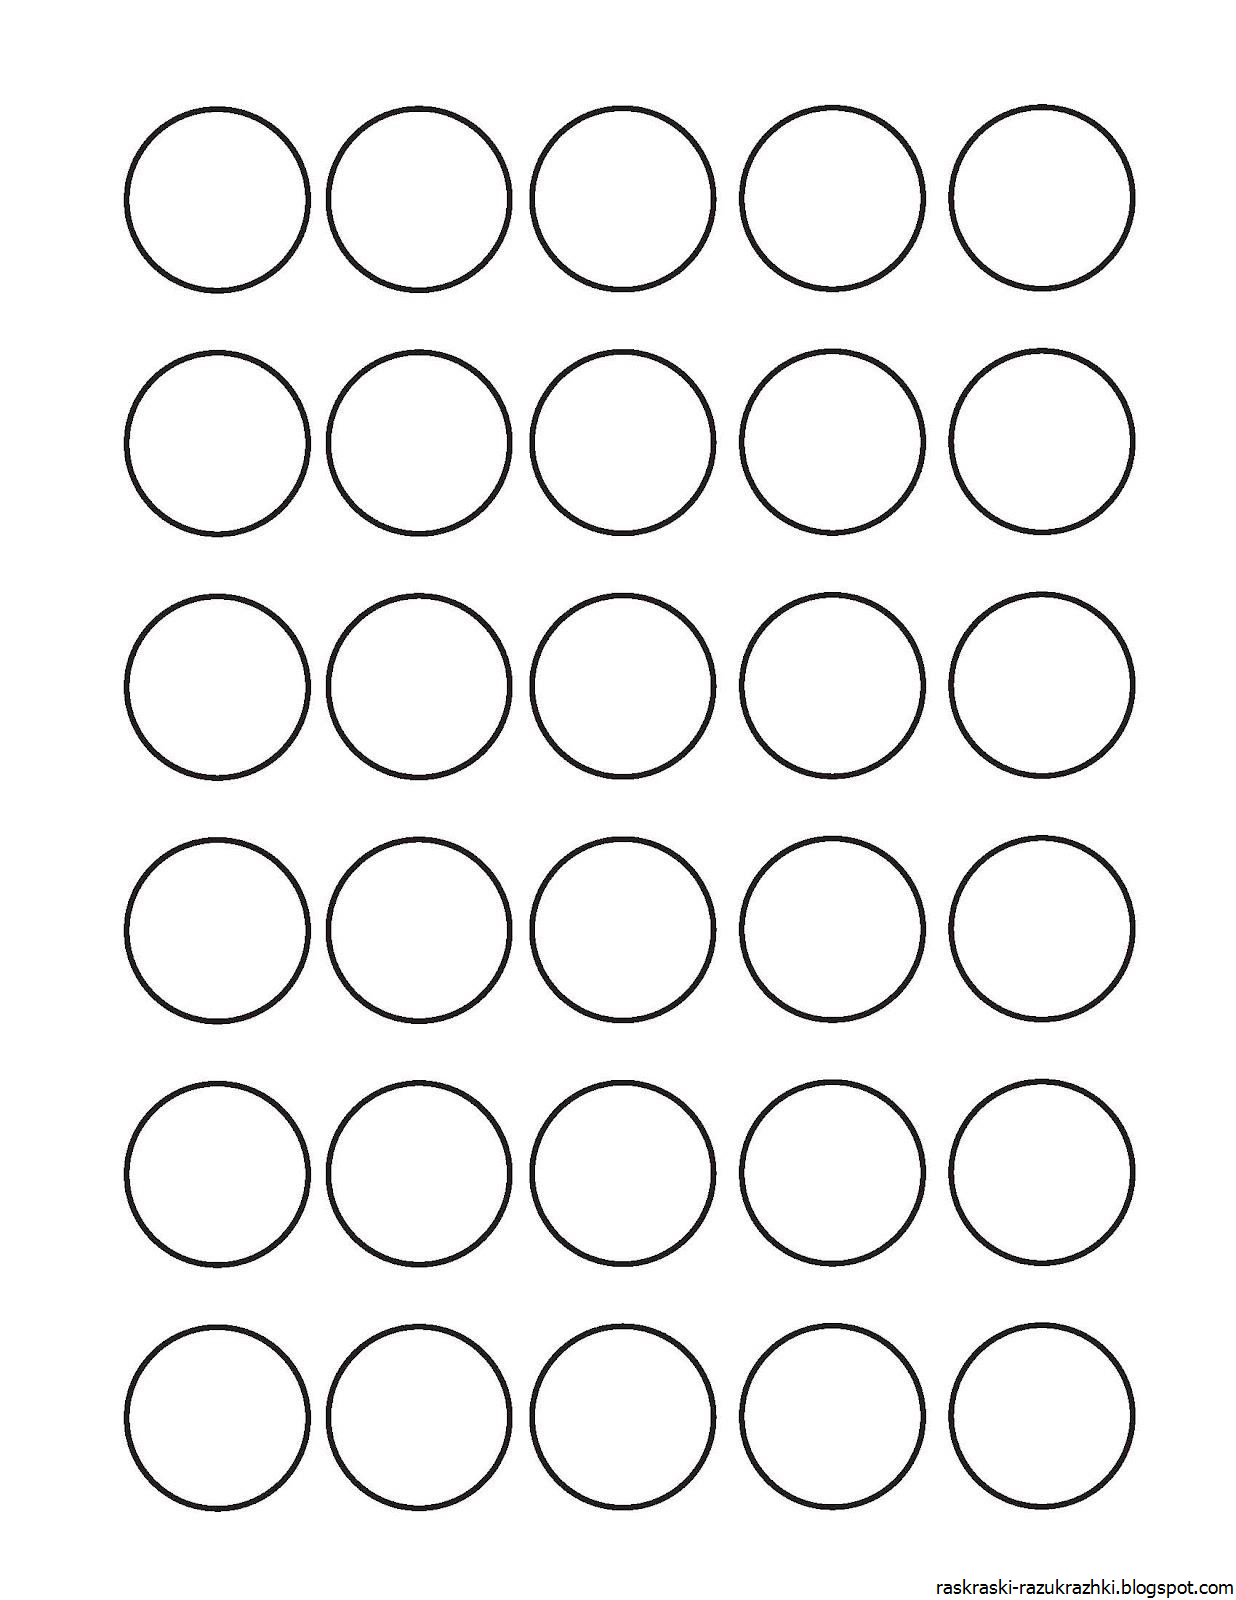 Все четыре круга одного размера диаметр. Методика раскрашивание кружков методика Шипицыной л.м. 12 Кругов на листе а4. Круг для раскрашивания. Кружочки для детей.